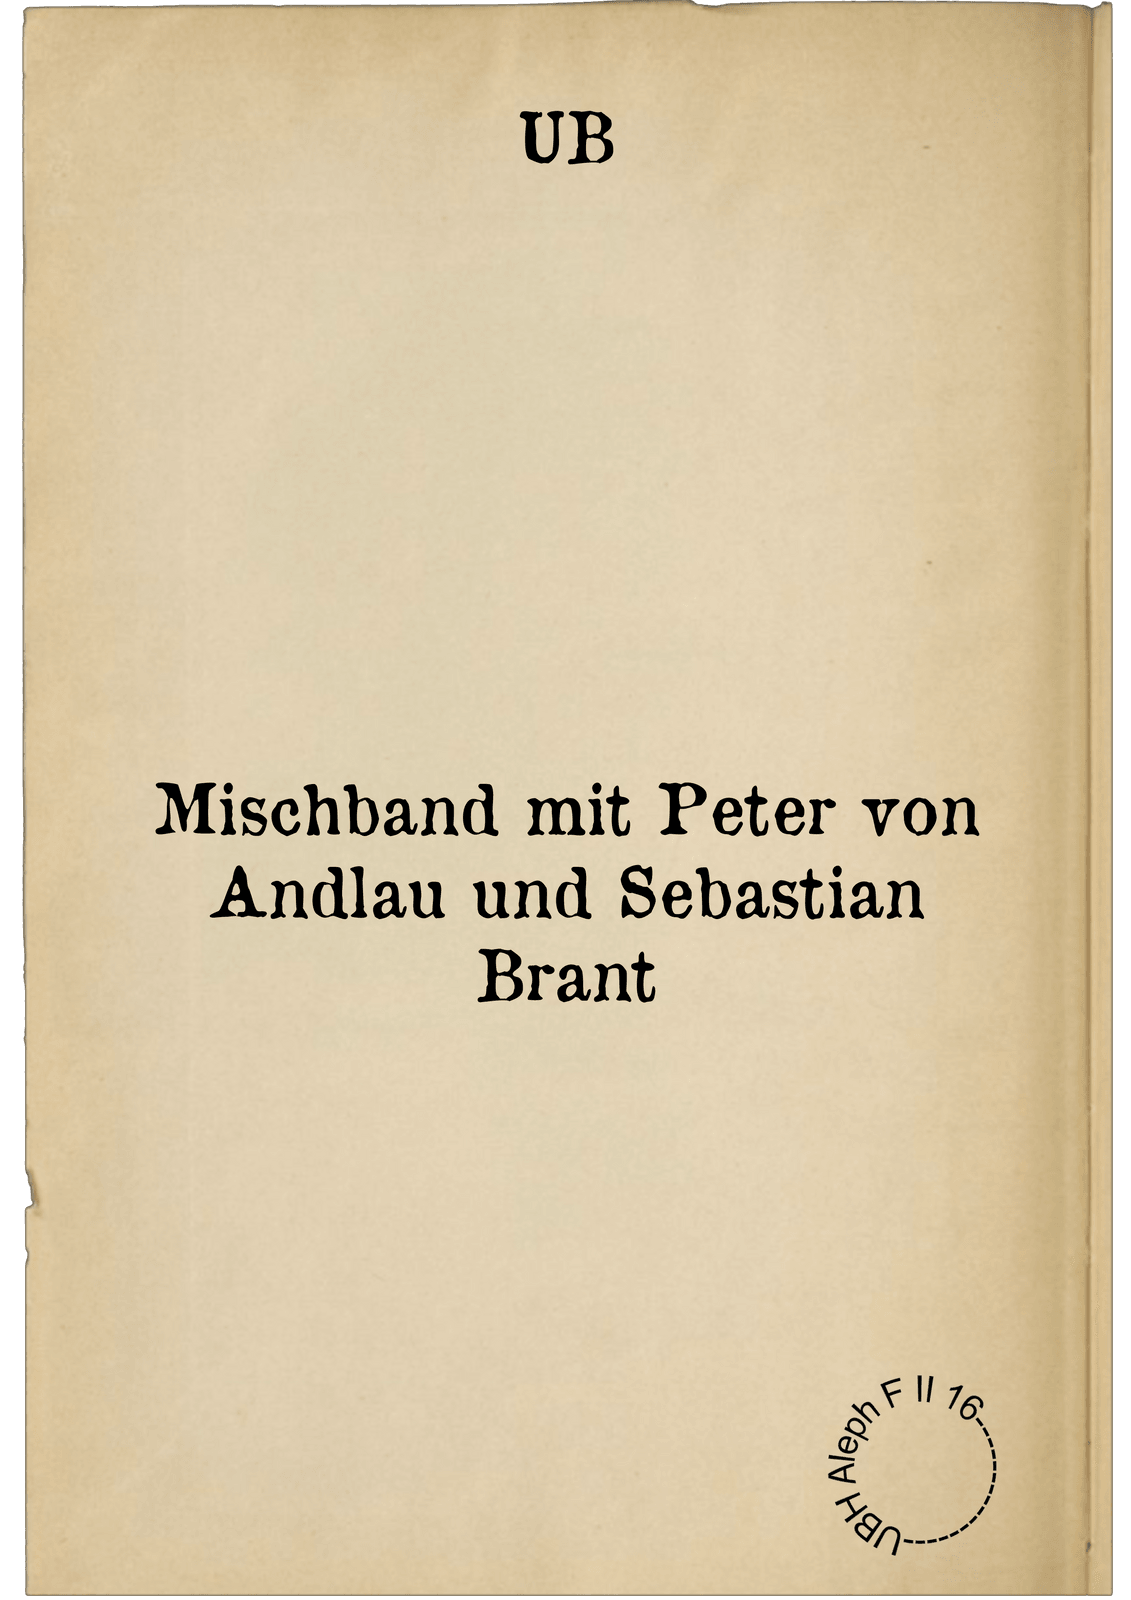 Mischband mit Peter von Andlau und Sebastian Brant